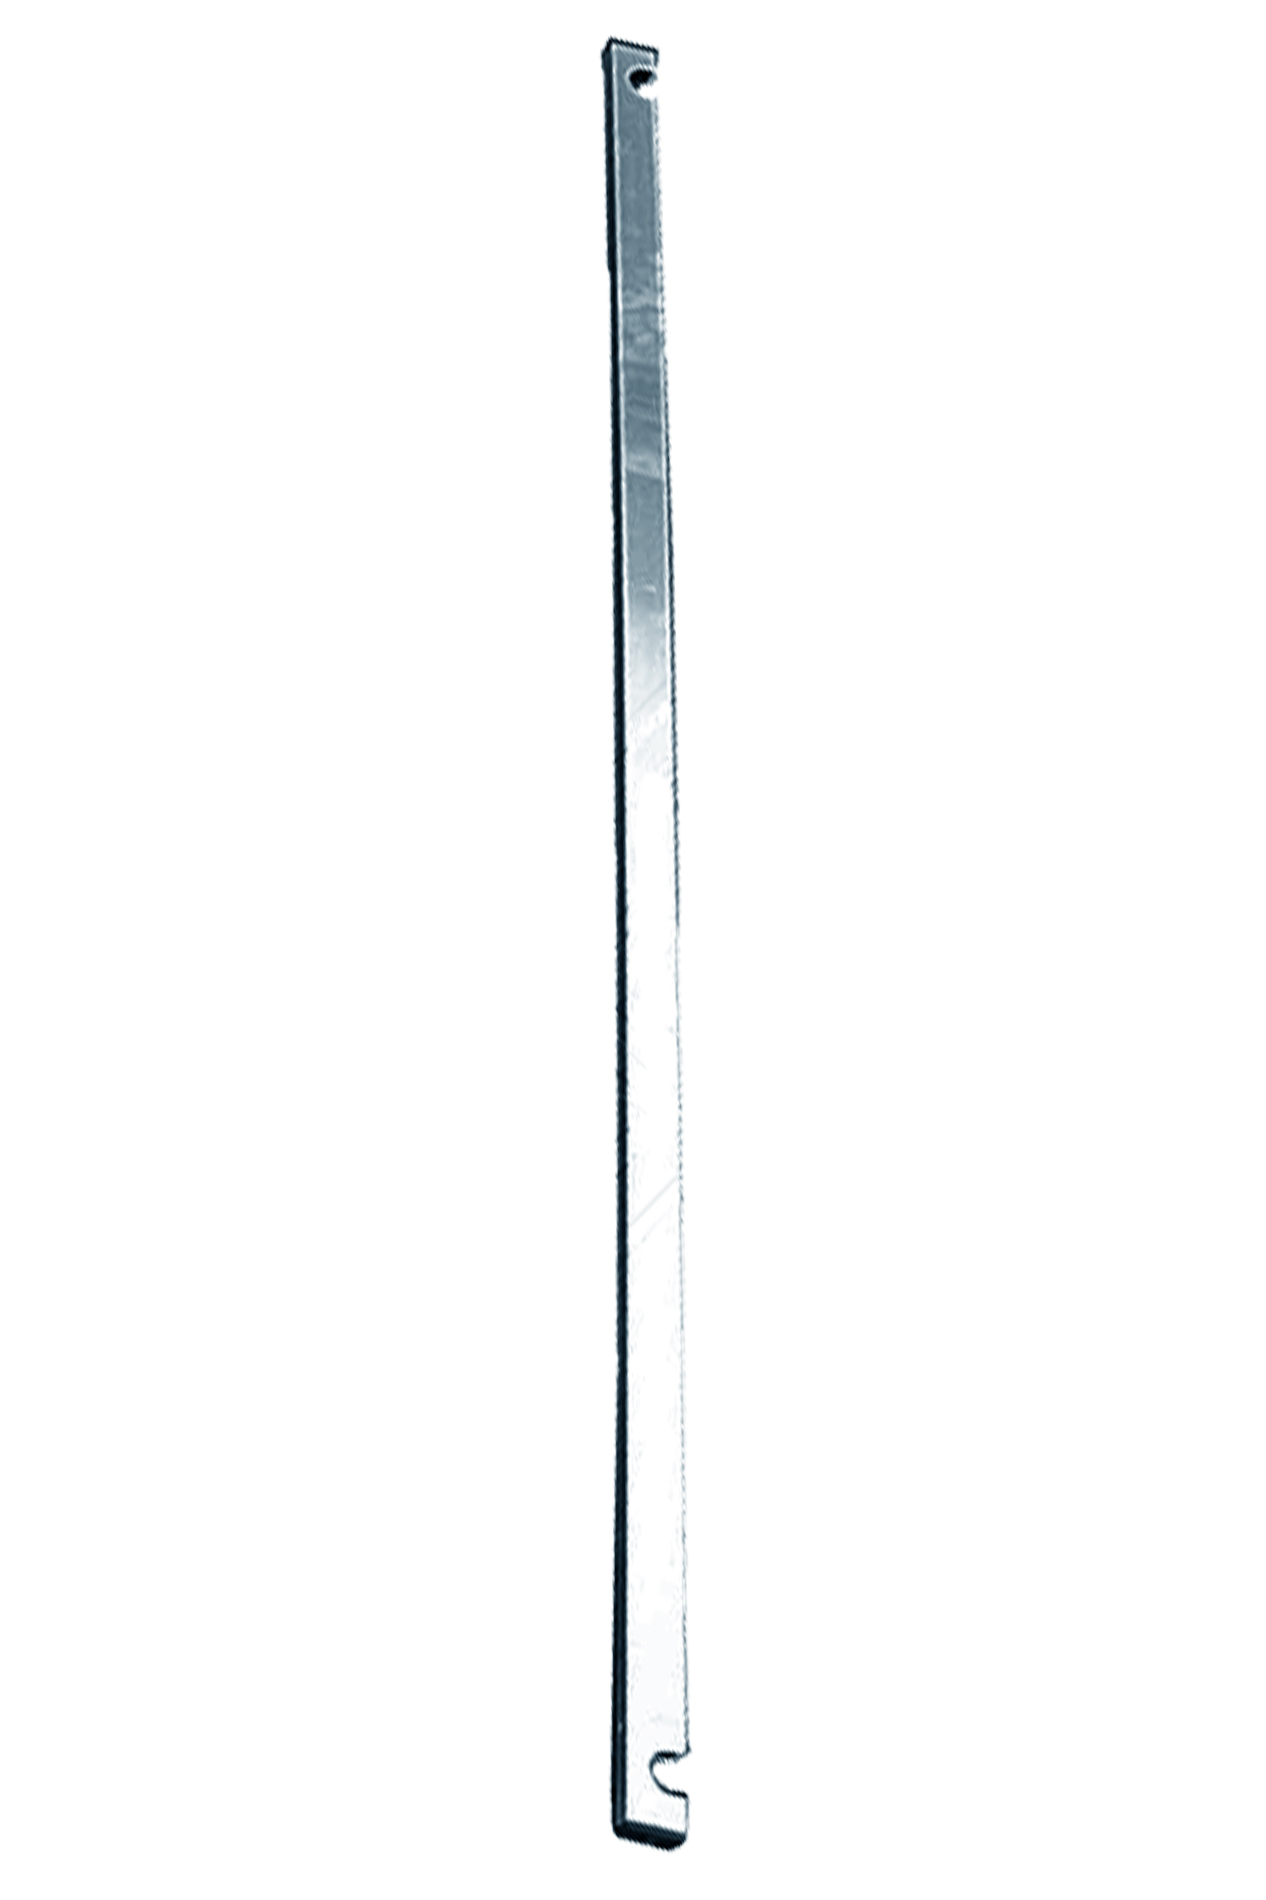 Дополнительное изображение STABILO 100-3 Передвижные подмости, рабочая высота 12,3 м, размер площадки (3.0x0.75 м)